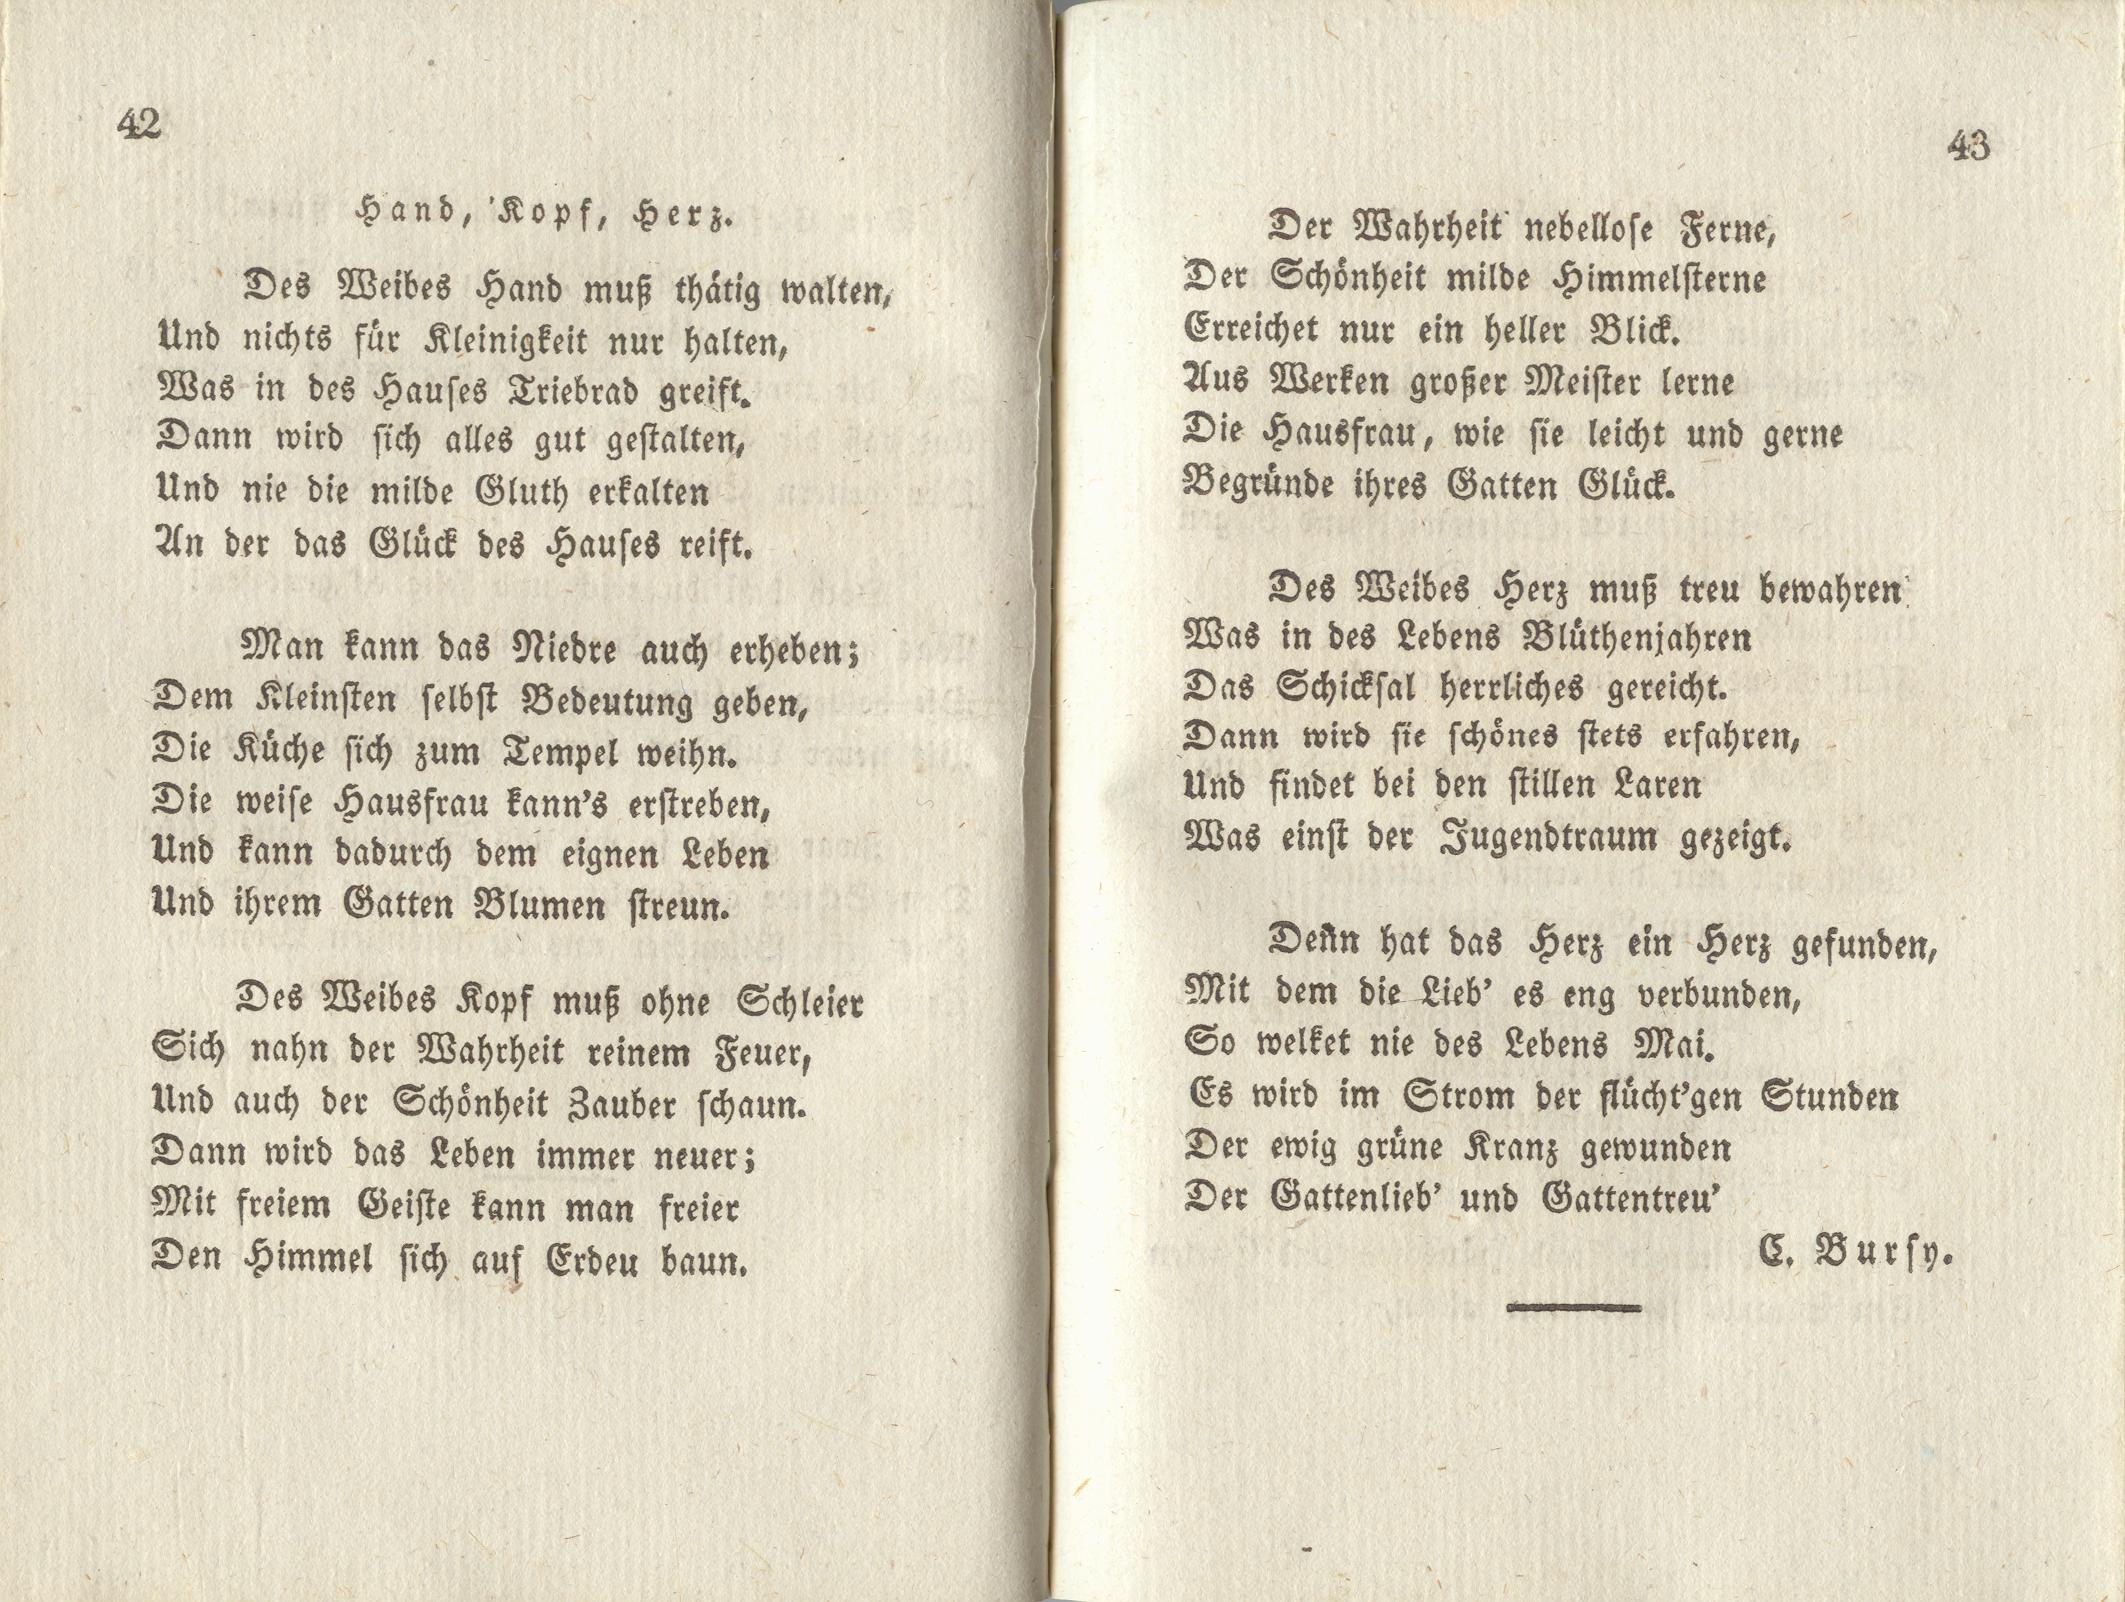 Hand, Kopf, Herz (1828) | 1. (42-43) Основной текст